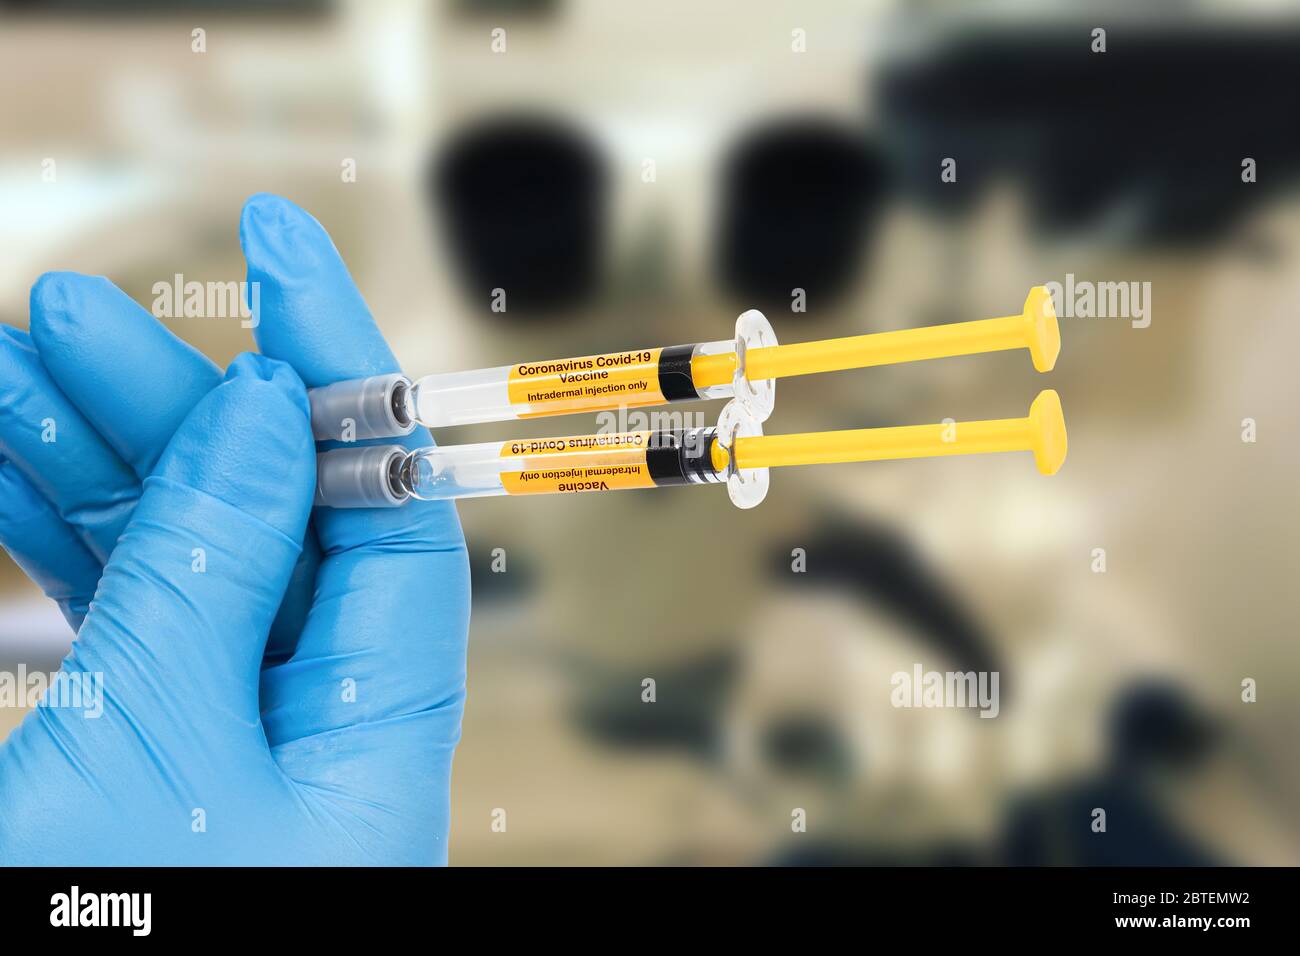 Arzthand hält zwei Spritze mit dem Coronavirus Covid-19 Impfstoff zur intradermalen Injektion. Konzept der Prävention und Behandlung des neuen coro Stockfoto